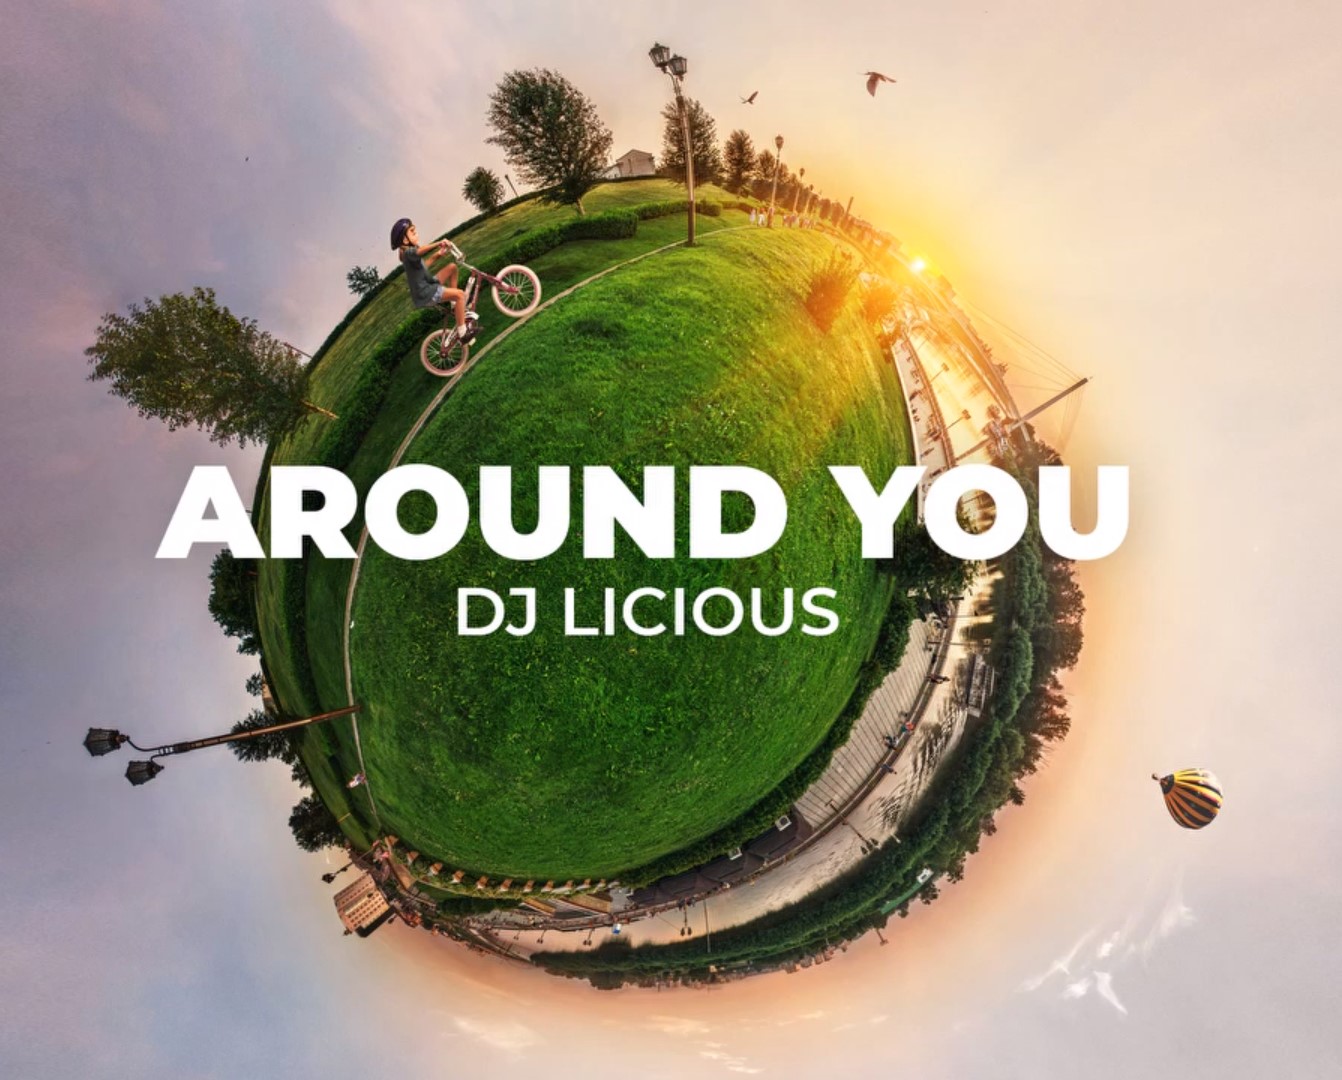 DJ Licious — Around You cover artwork